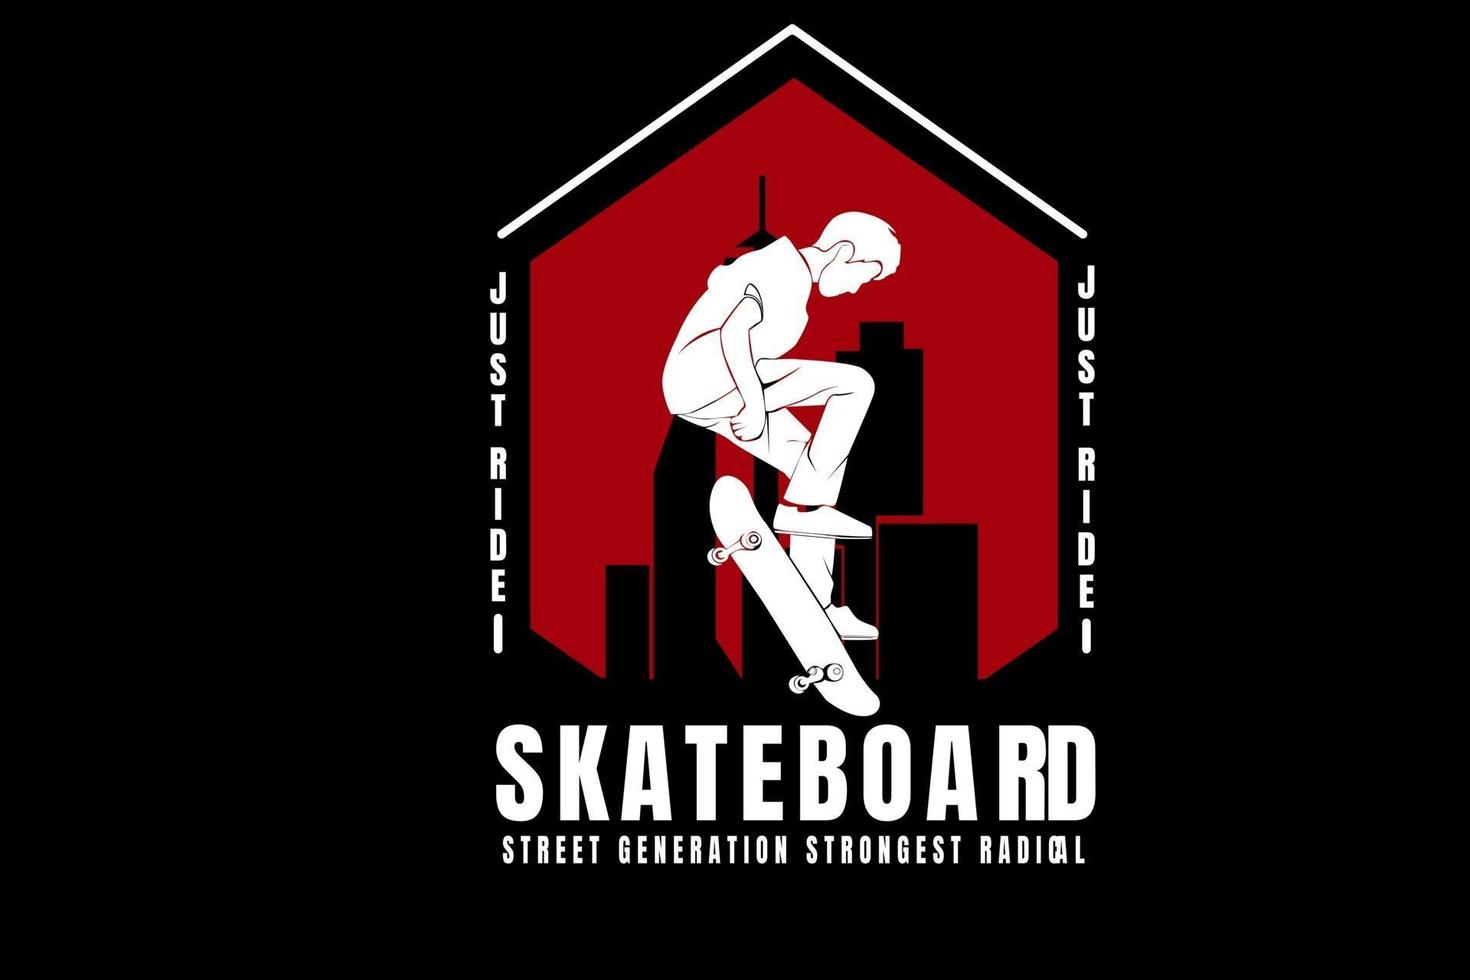 juste ride skateboard street generation la plus forte couleur radicale blanc et rouge vecteur